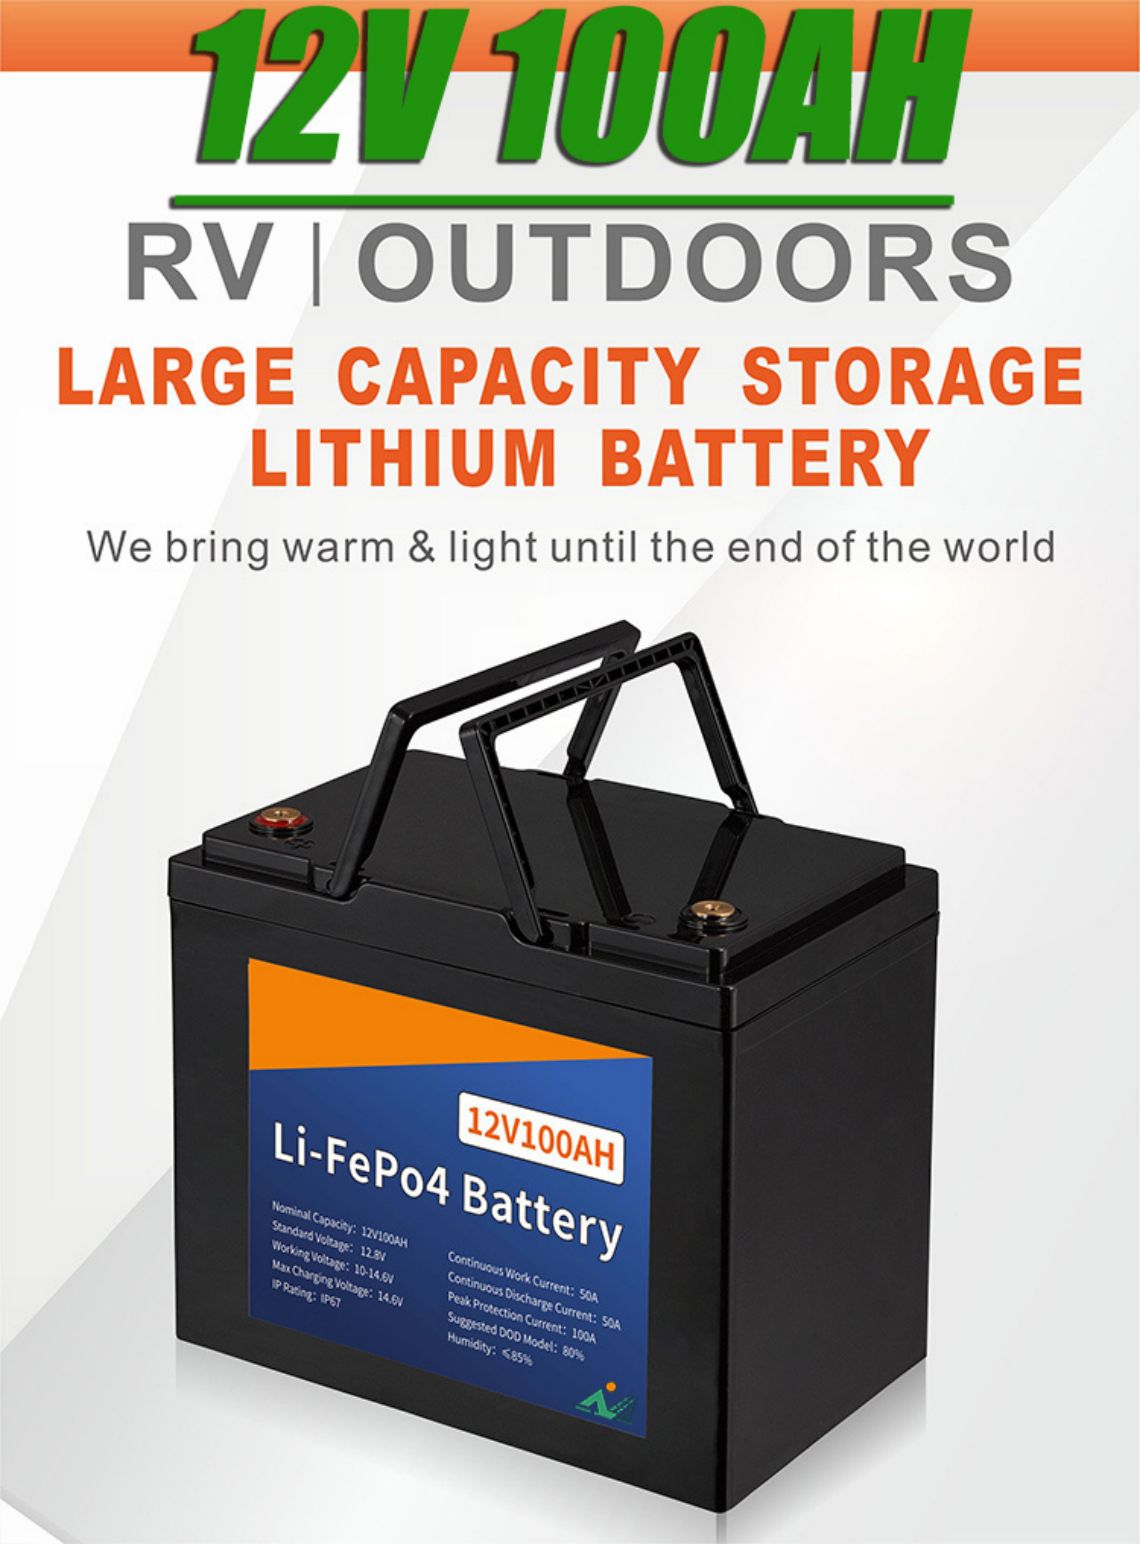 литиевая батарея лифопо4